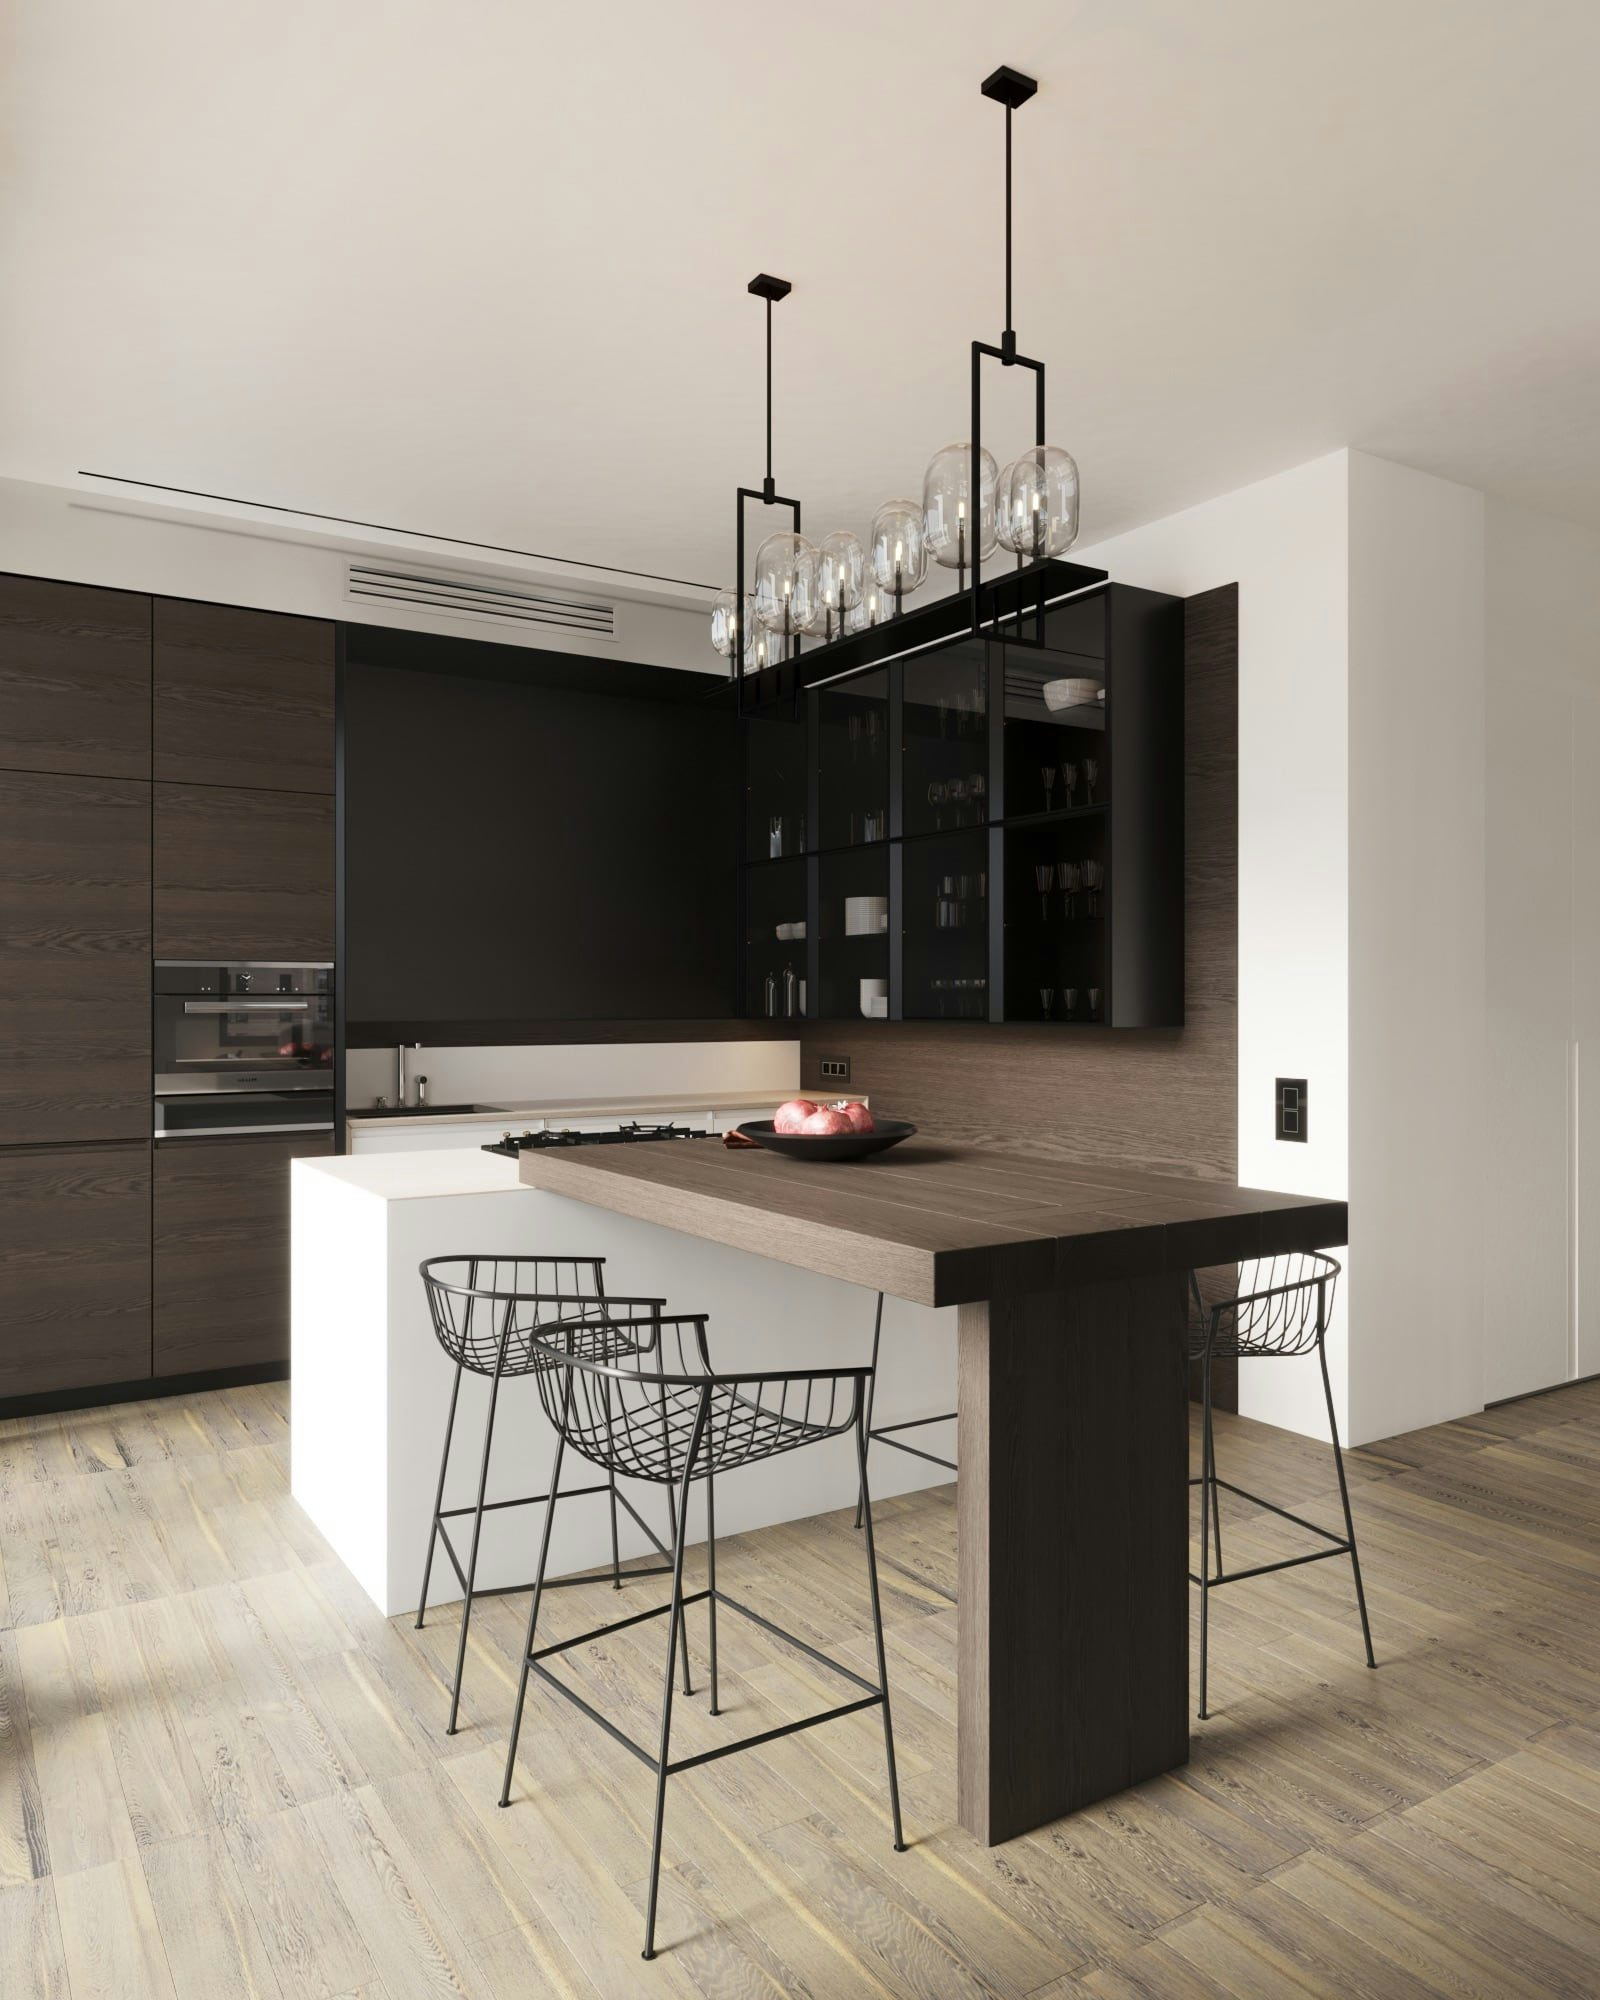 3D Architektur Visualisierung des Küchenraums in einer minimalistischen Wohnung in Berlin